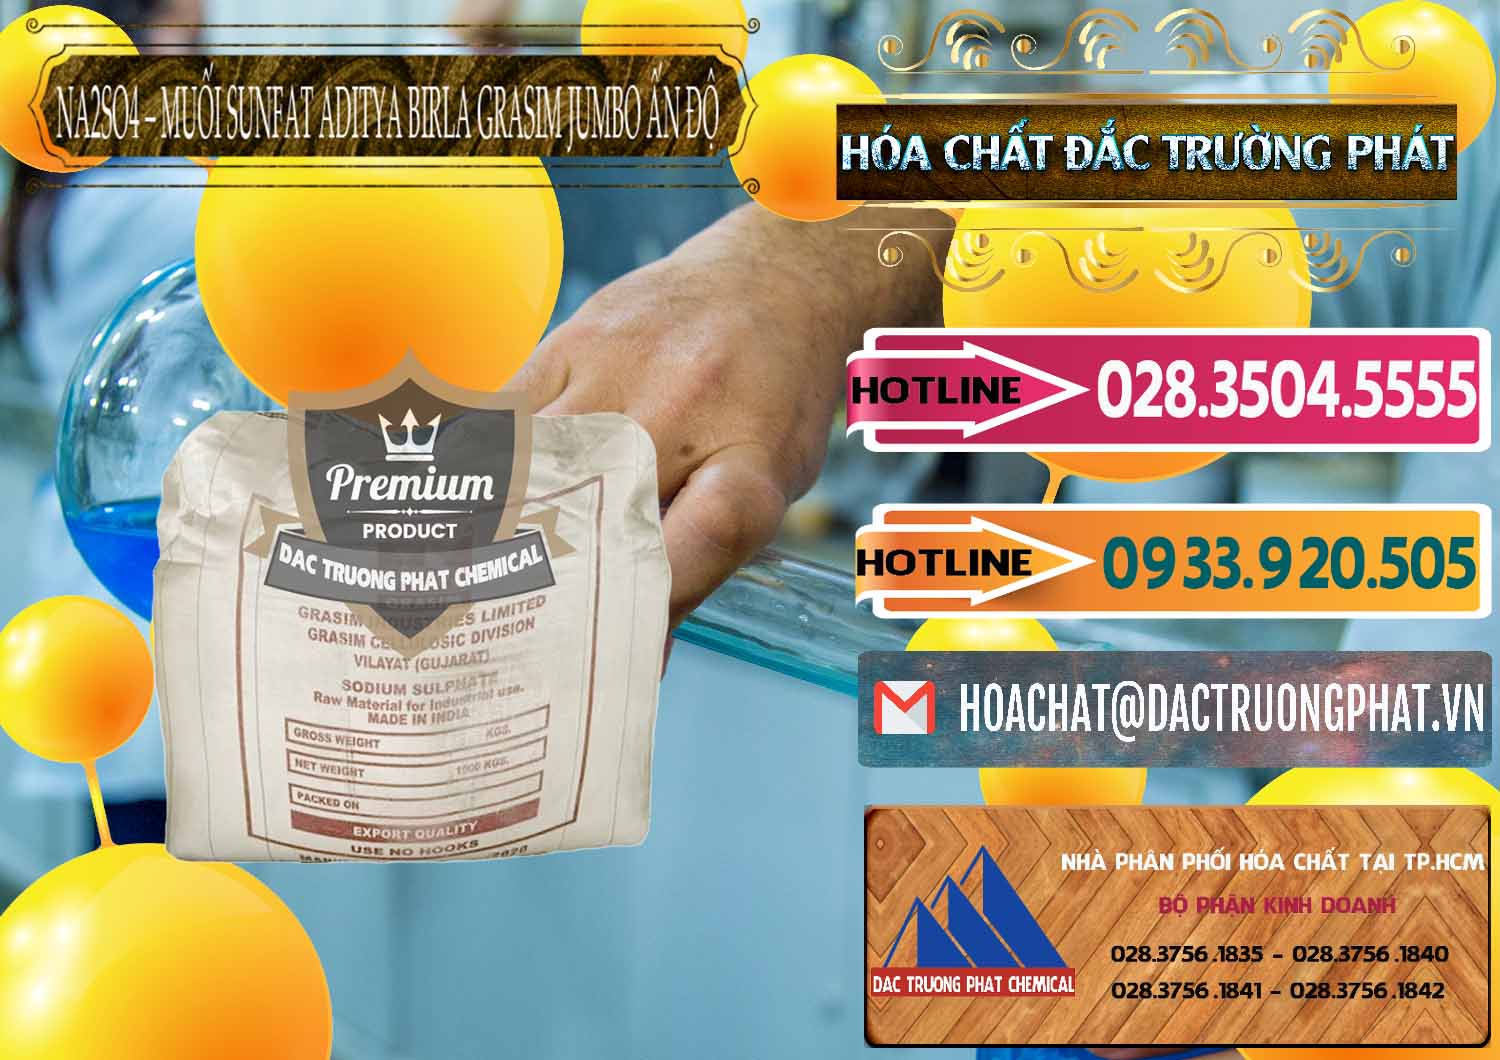 Công ty kinh doanh & bán Sodium Sulphate - Muối Sunfat Na2SO4 Jumbo Bành Aditya Birla Grasim Ấn Độ India - 0357 - Công ty cung cấp - kinh doanh hóa chất tại TP.HCM - dactruongphat.vn